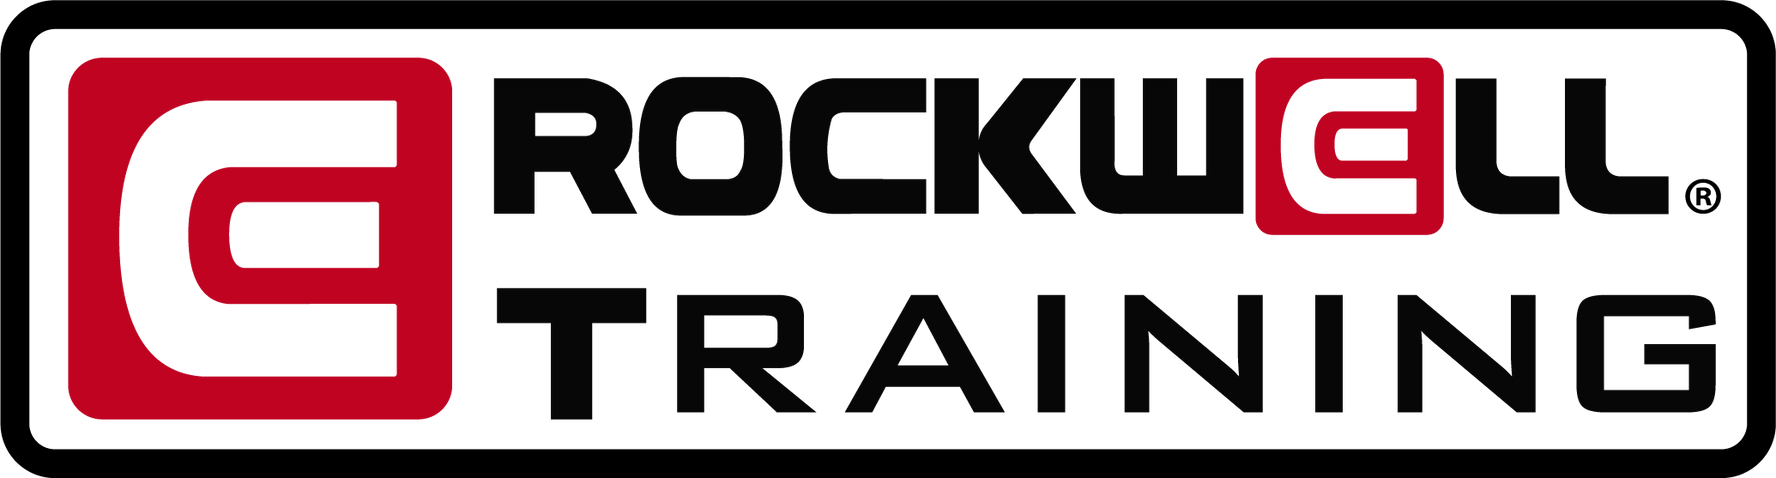 Rockwell Training logo